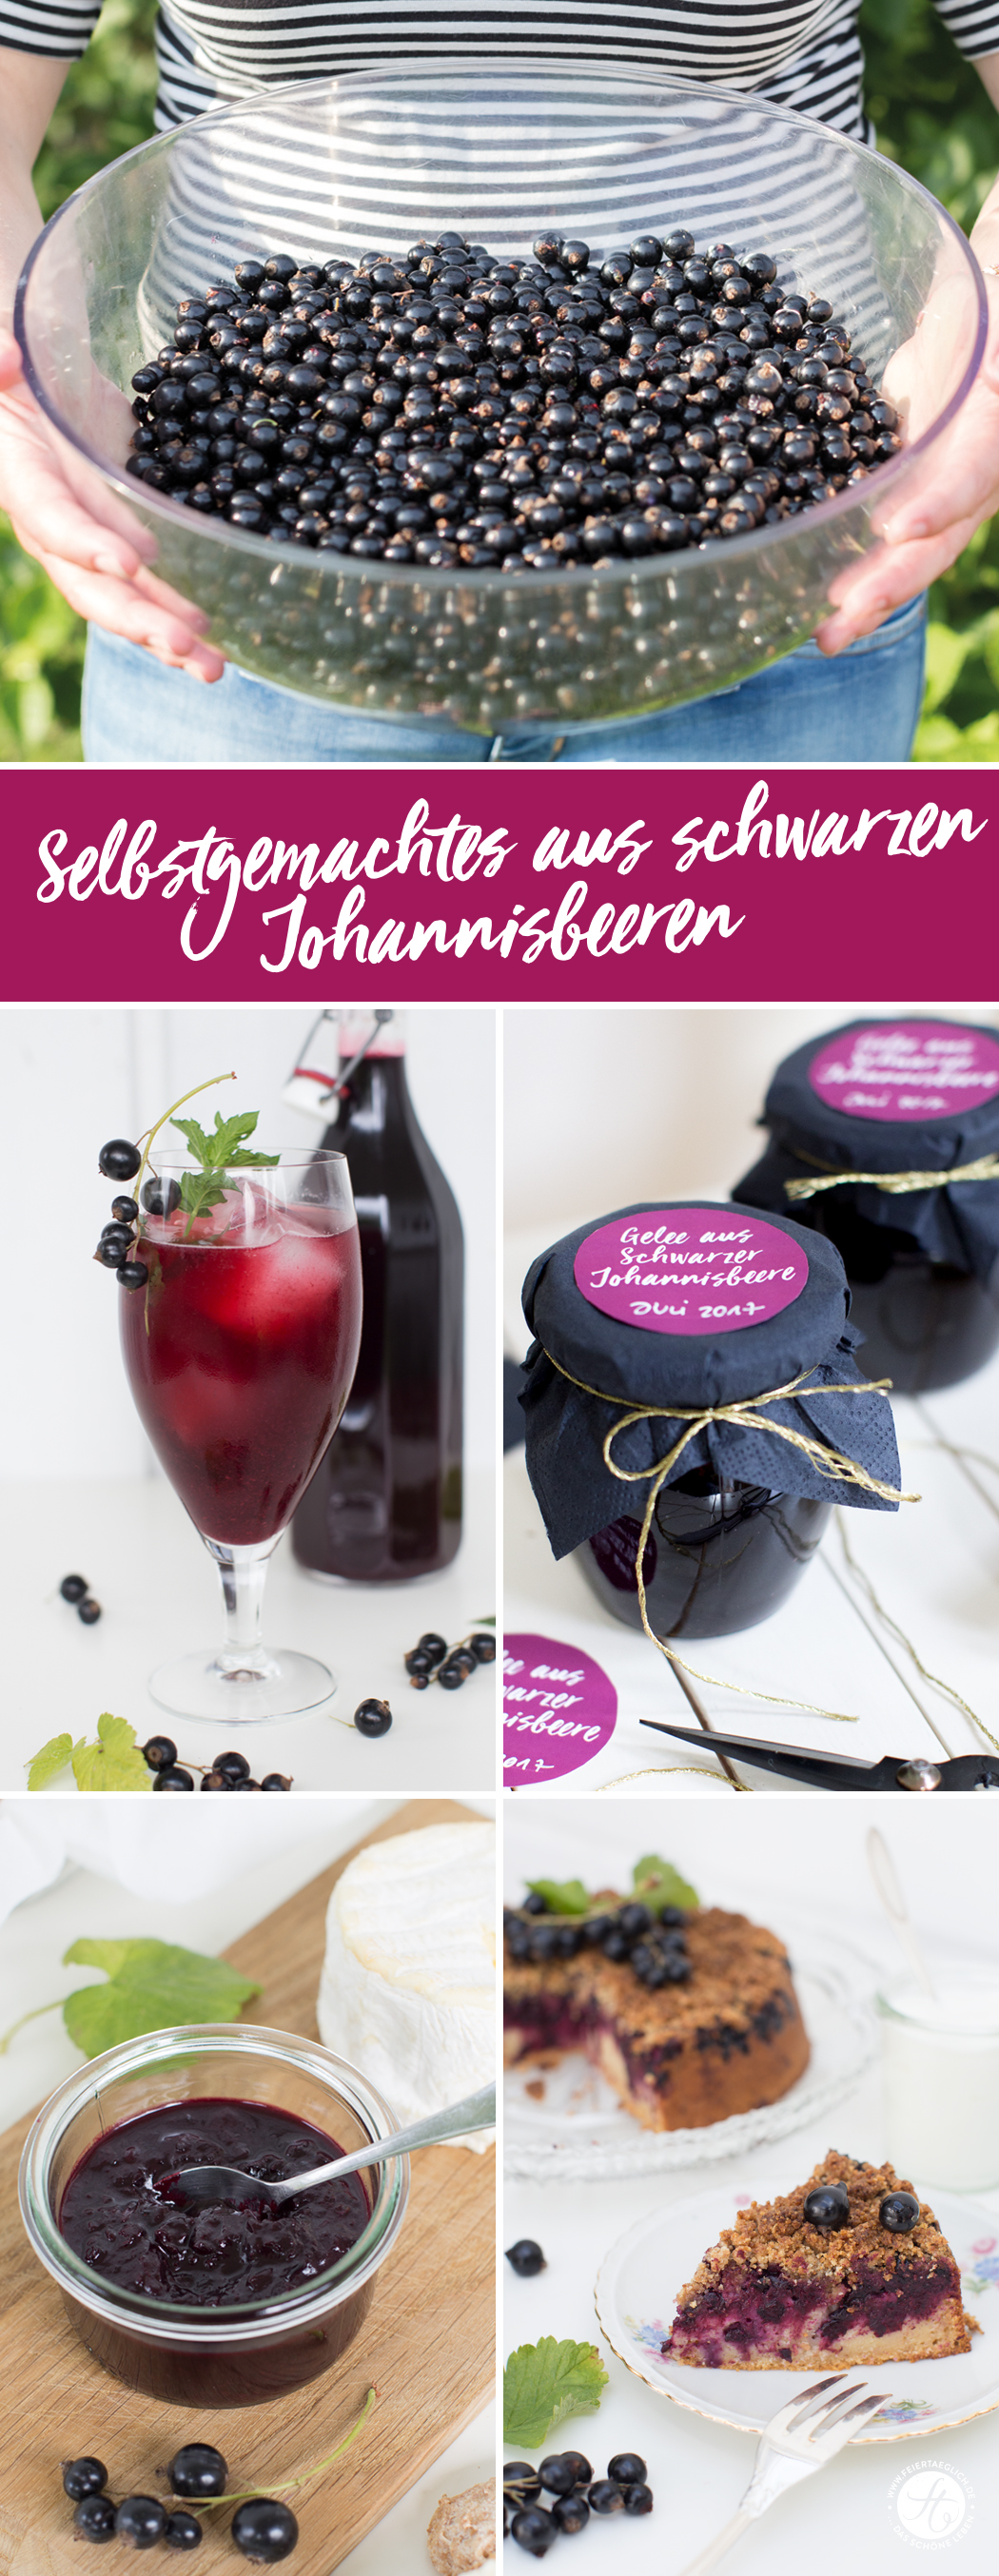 Selbstgemachtes aus schwarzen Johannisbeere: Rezepte für Johannisbeer-Ingwer-Chutney, Johannisbeersaft & Johannisbeergelee